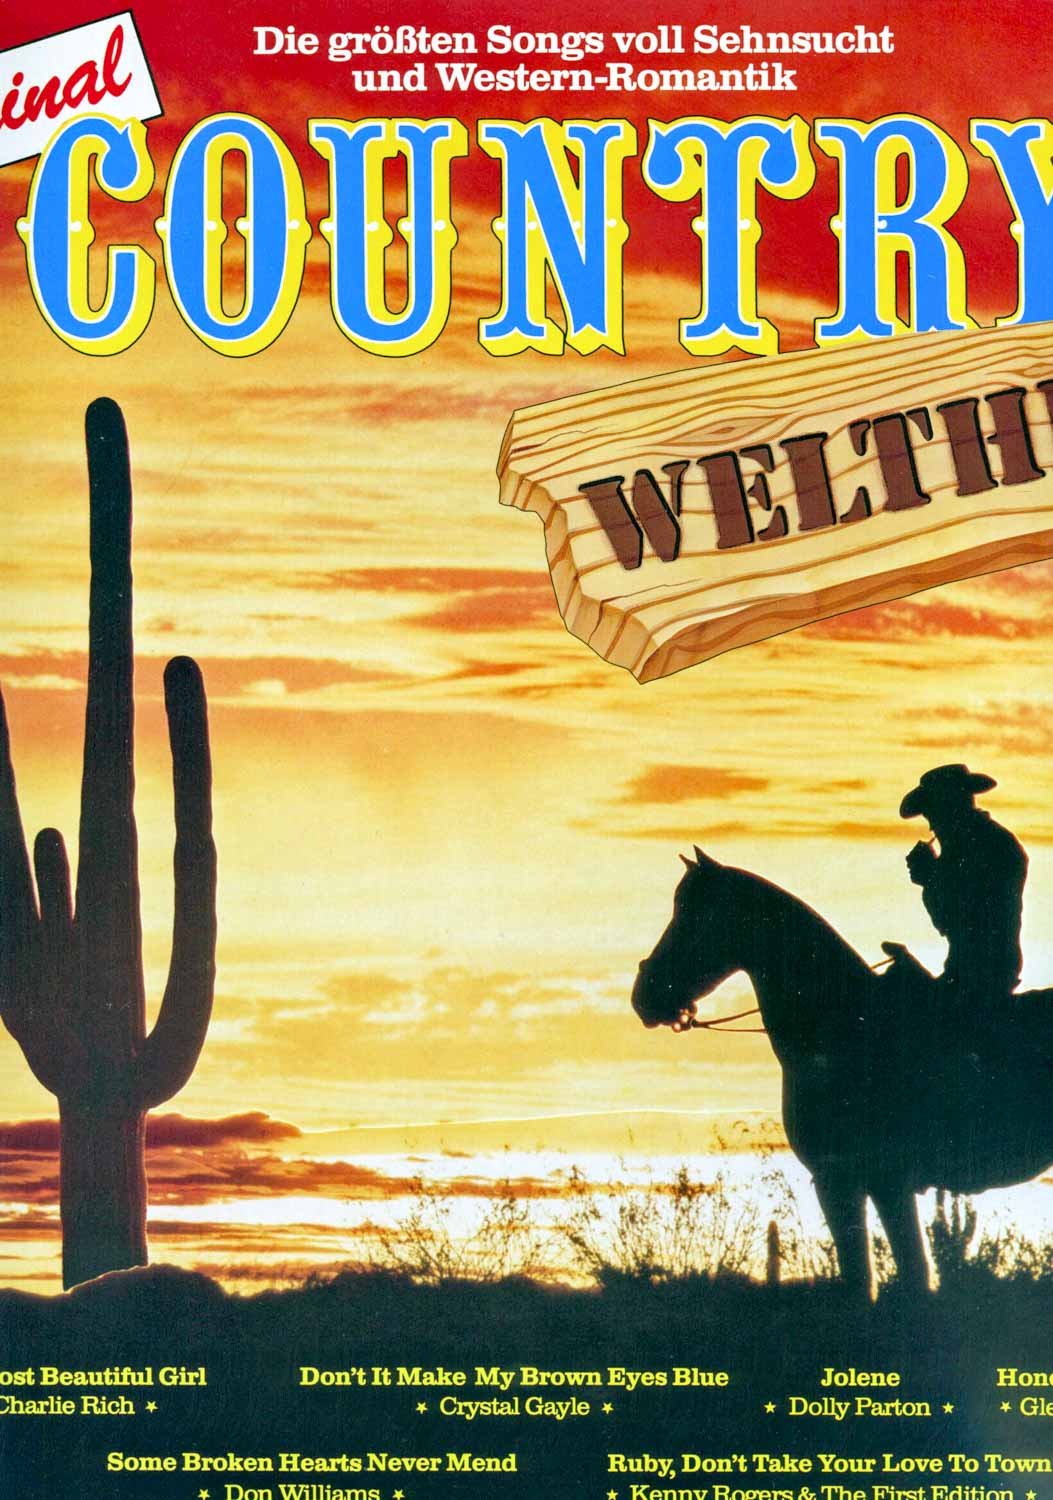 Div. (Sampler)  Original Country Welthits. Die größten Songs voll Sehnsucht und Western-Romantik (LC 2769)  *LP 12'' (Vinyl)*. 